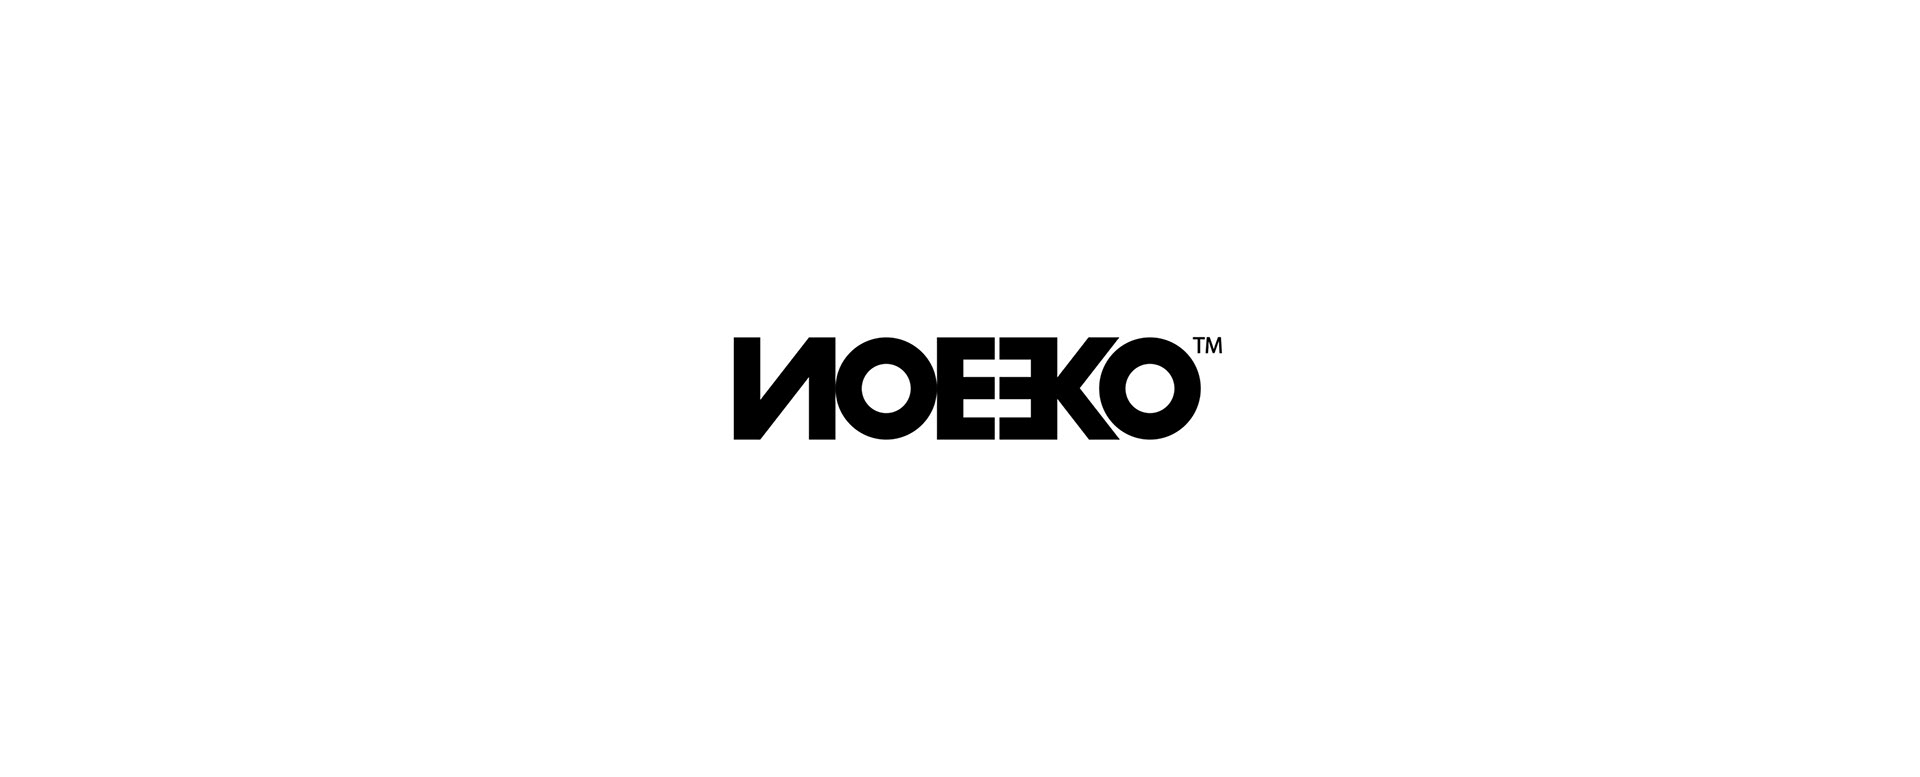 Noeeko Studio标志设计欣赏(二)